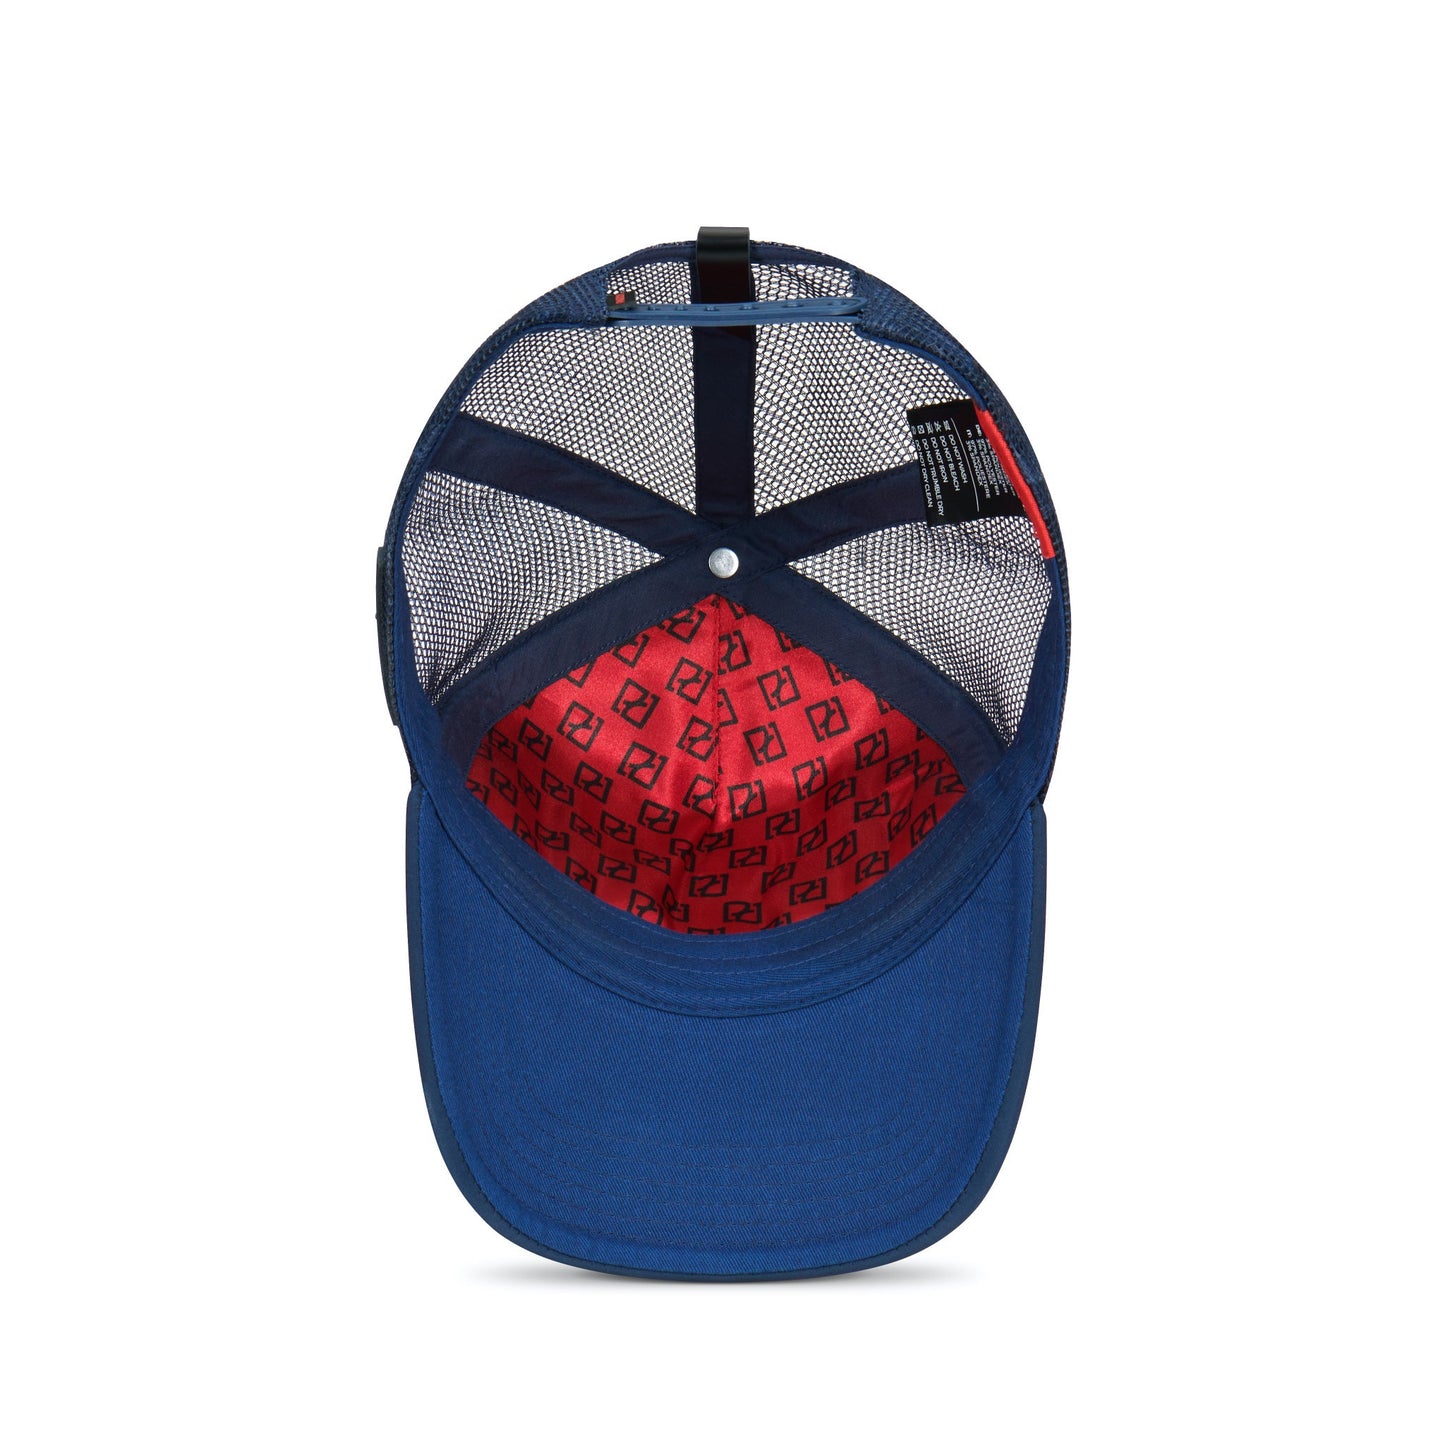 Inside Trucker Hat Partch in bleu - snapback - unisex